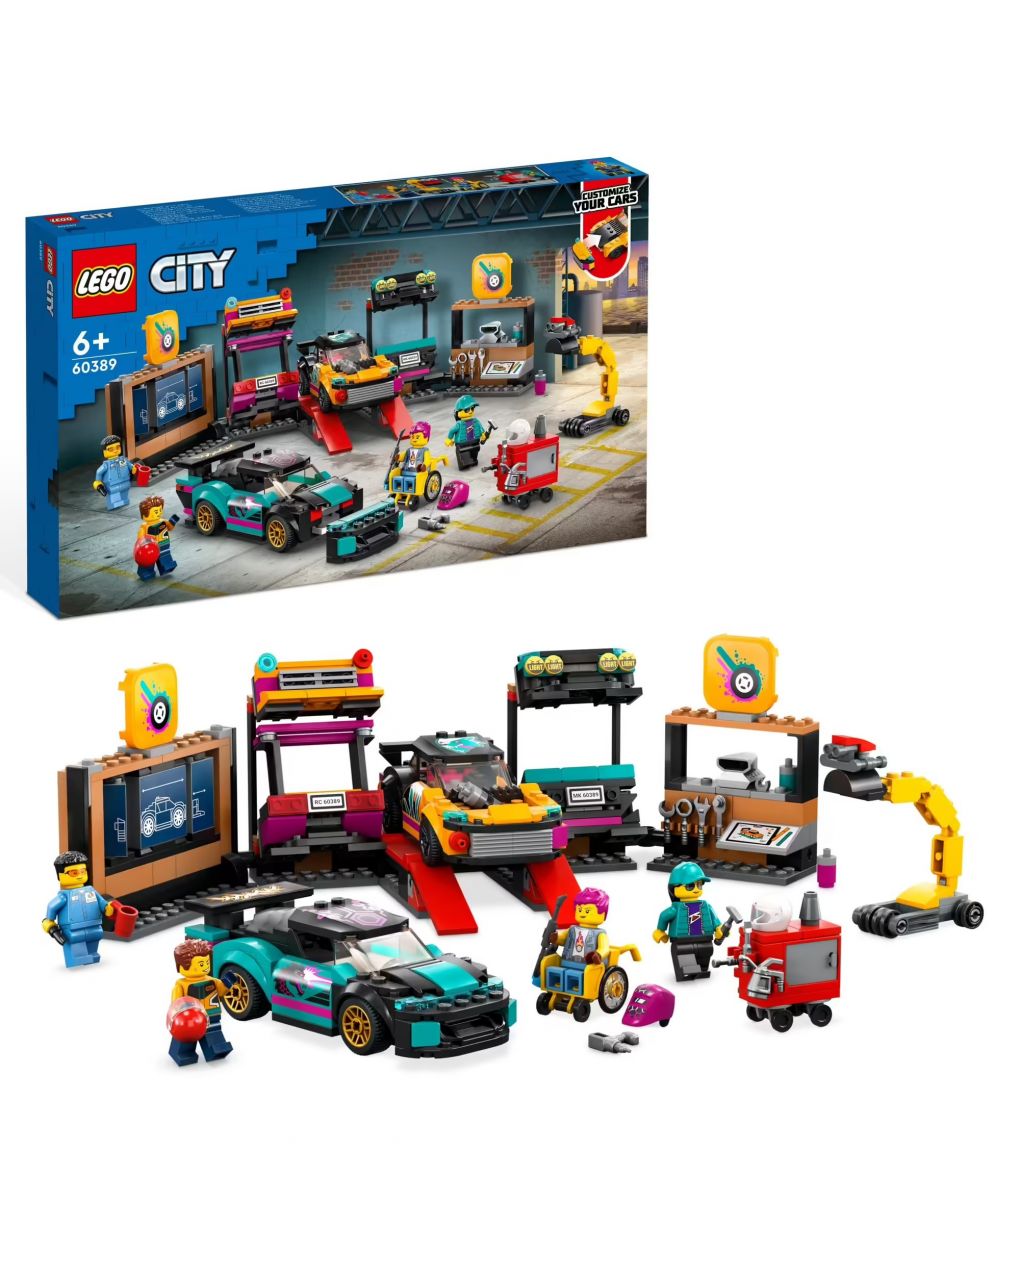 Garagem de carros personalizada com 2 carros de brinquedo personalizáveis - oficina e 4 minifiguras - lego city - LEGO